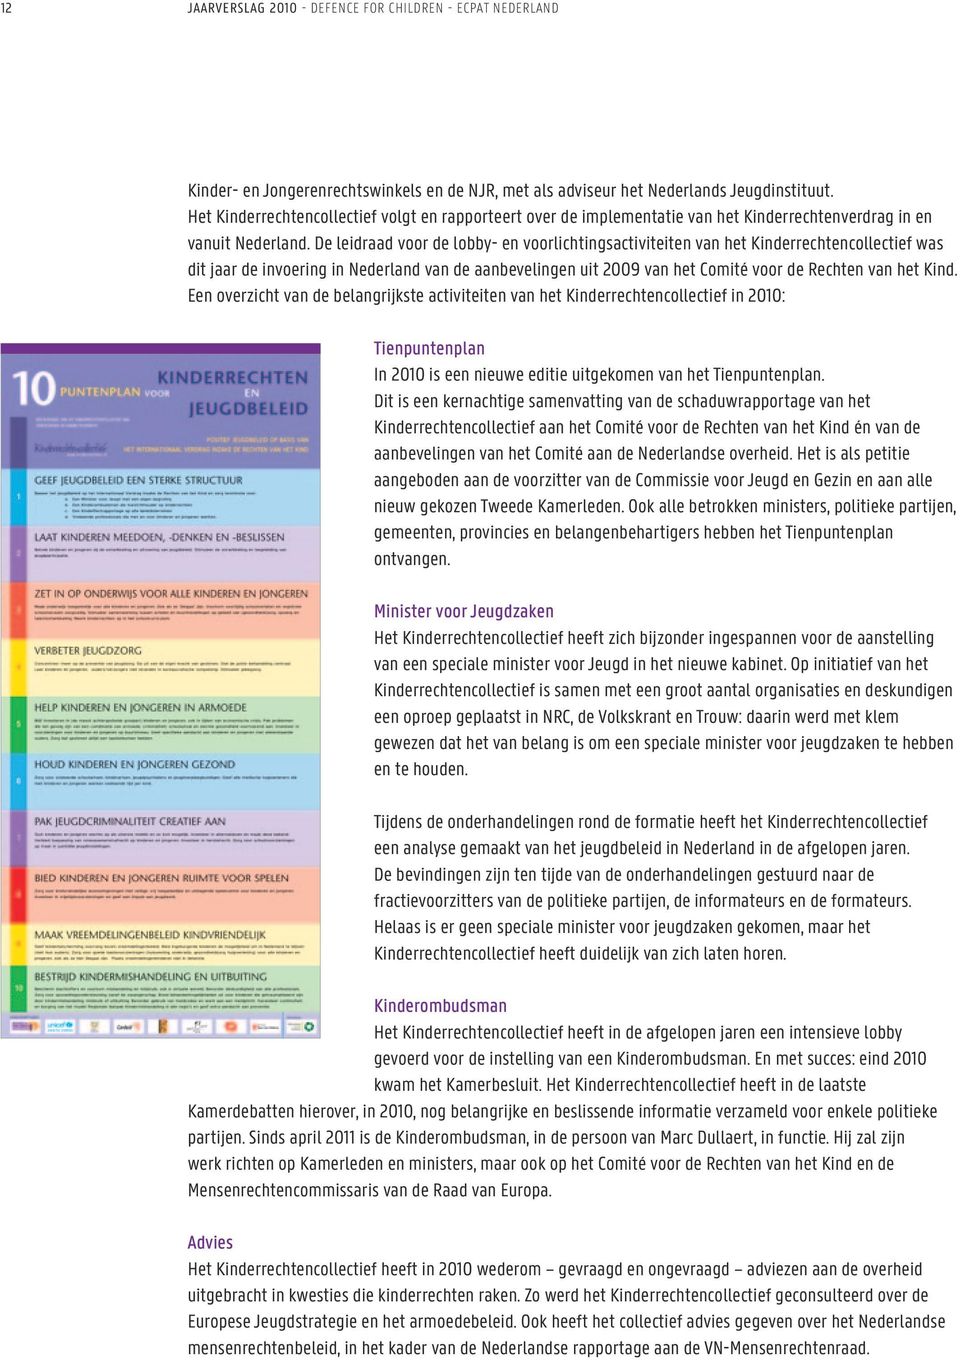 De leidraad voor de lobby- en voorlichtingsactiviteiten van het Kinderrechtencollectief was dit jaar de invoering in Nederland van de aanbevelingen uit 2009 van het Comité voor de Rechten van het